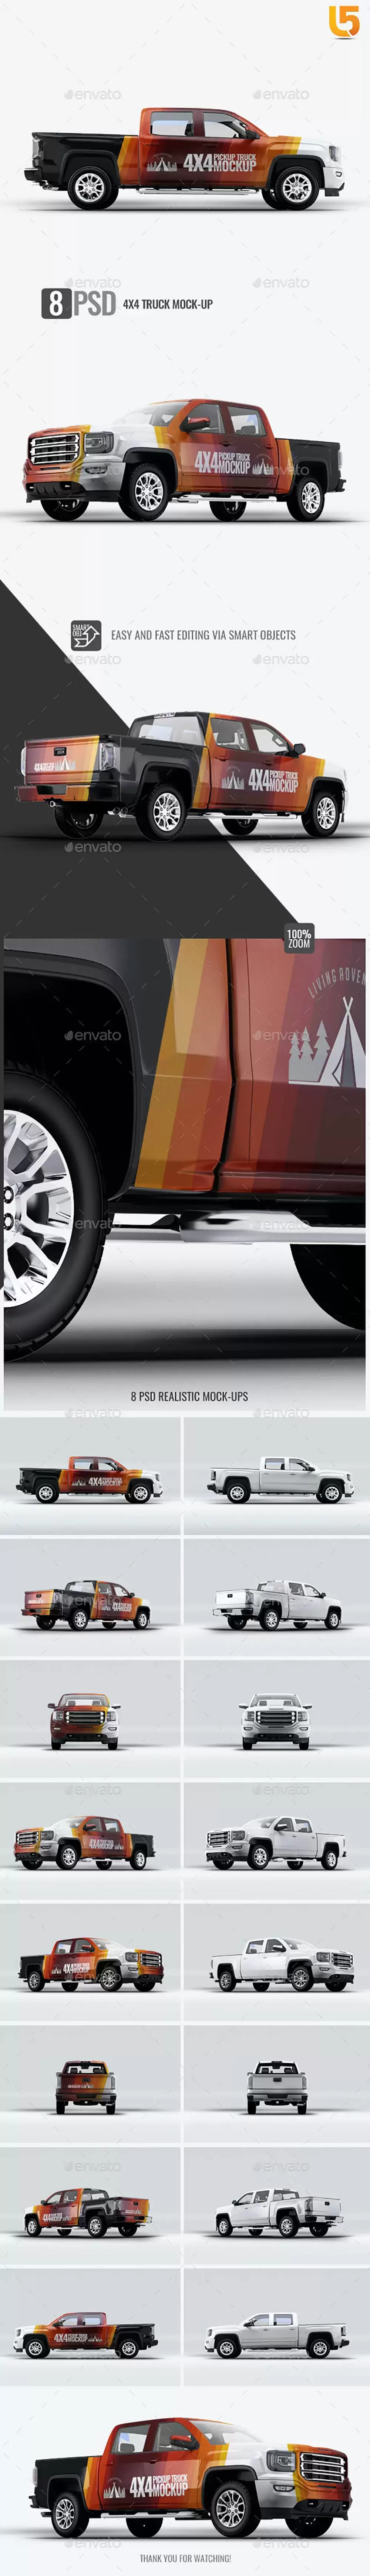 4X4皮卡汽车品牌广告设计样机 (psd)免费下载插图